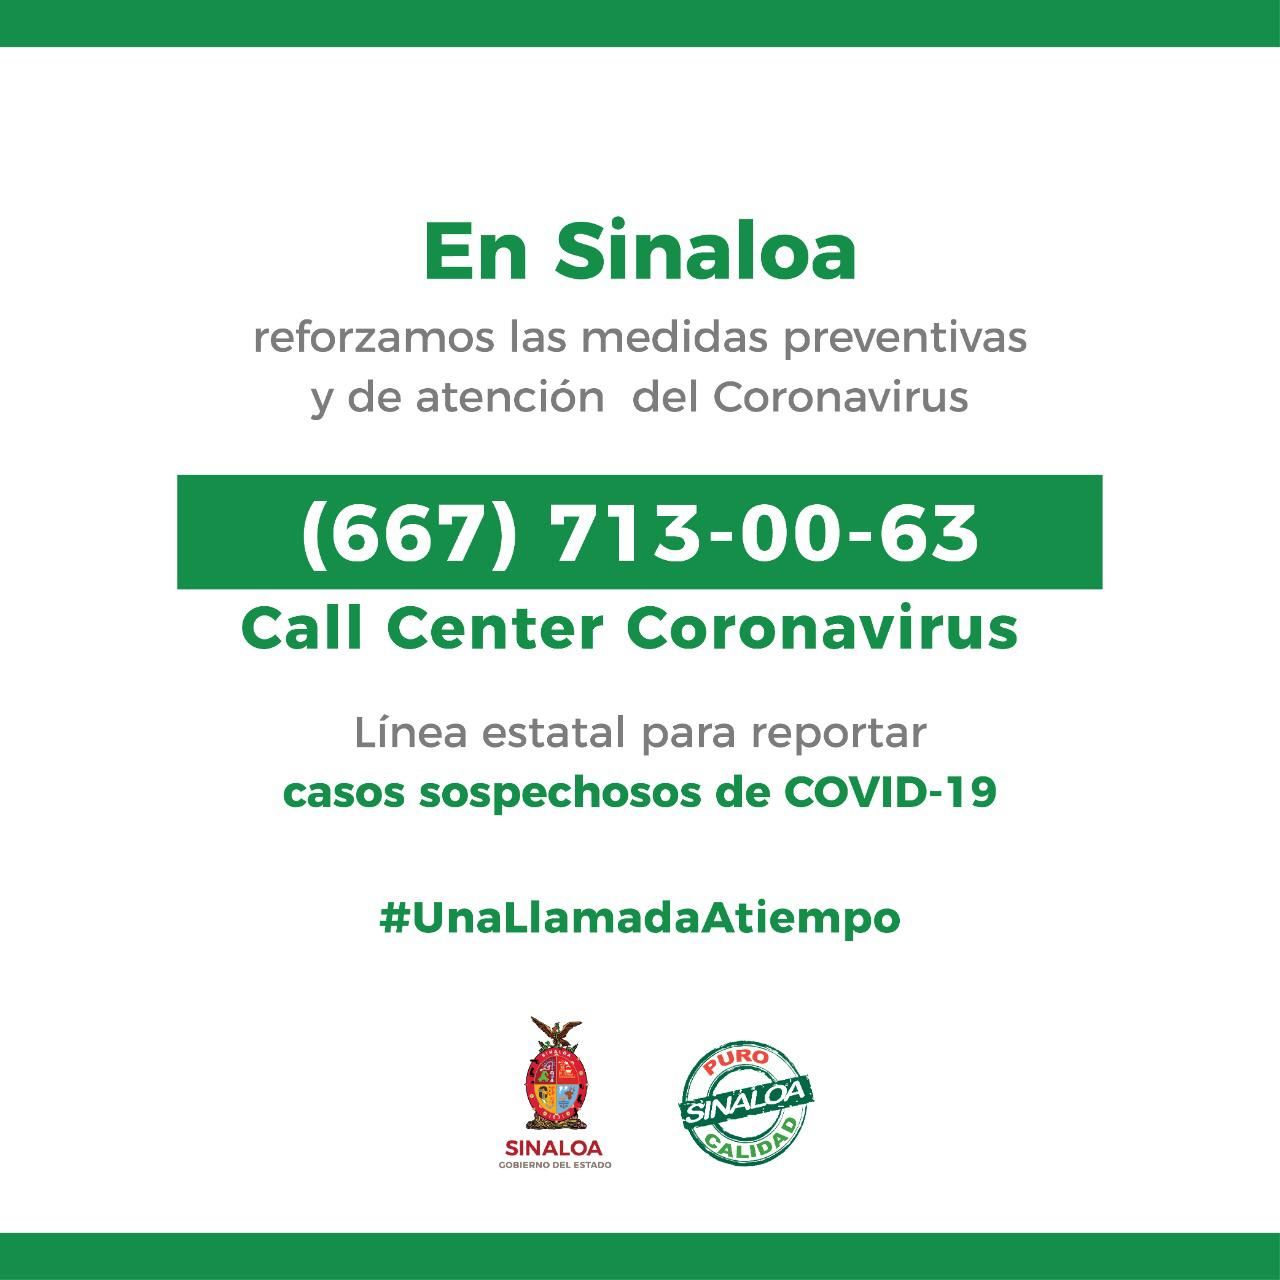 Ante sospechas de Coronavirus, llamar a la línea COVID-19, pide Quirino